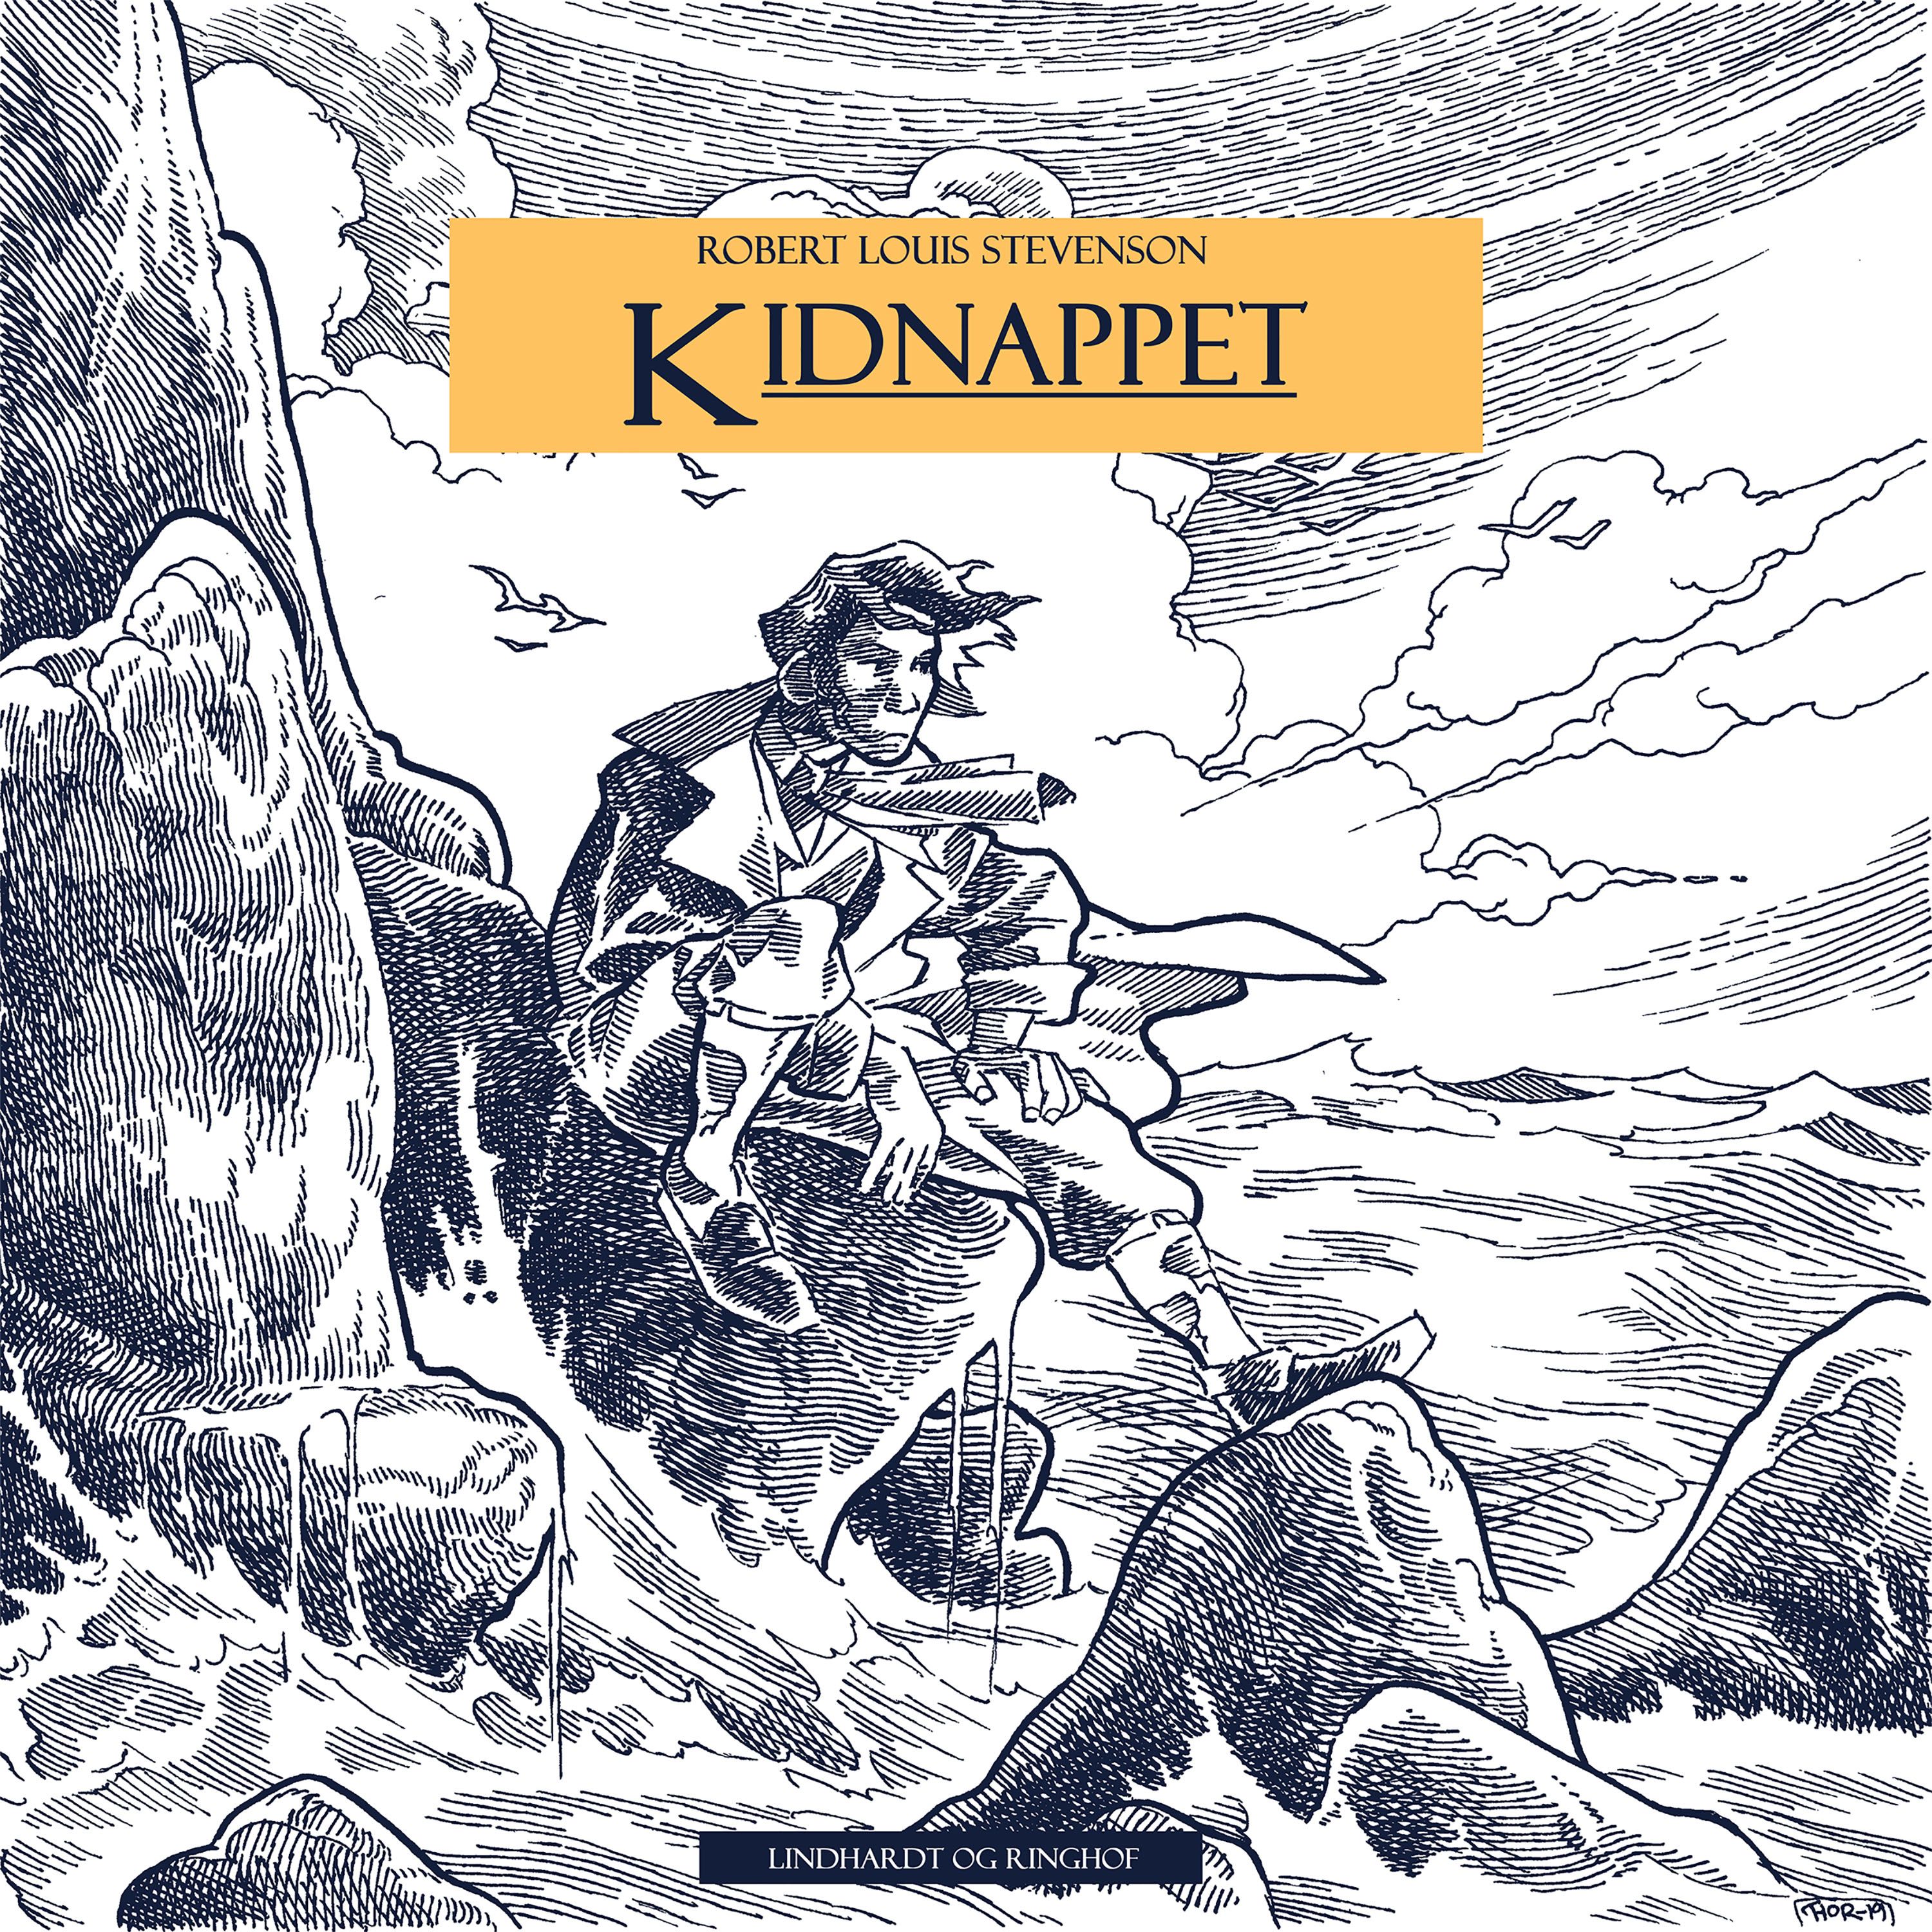 Kidnappet, audiobook by Robert Louis Stevenson